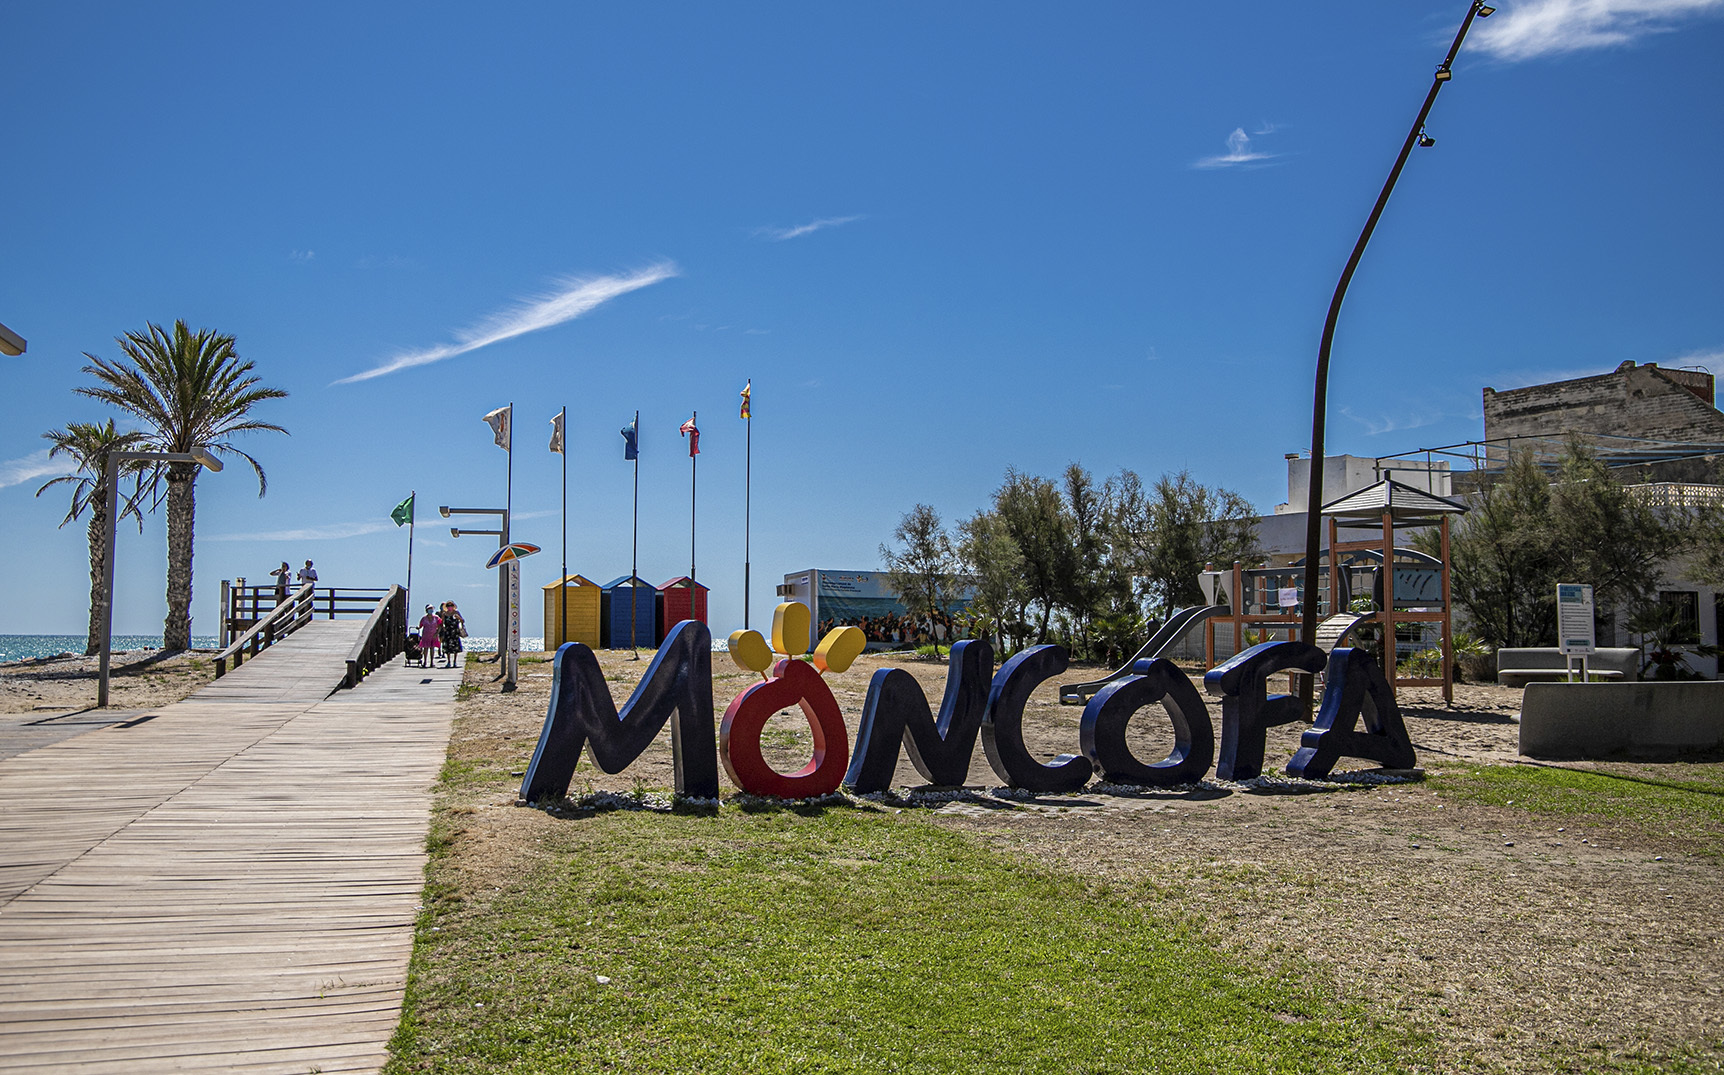 Cuatro playas de la localidad costera de Moncofa volvern a exhibir sus banderas azulees este verano.